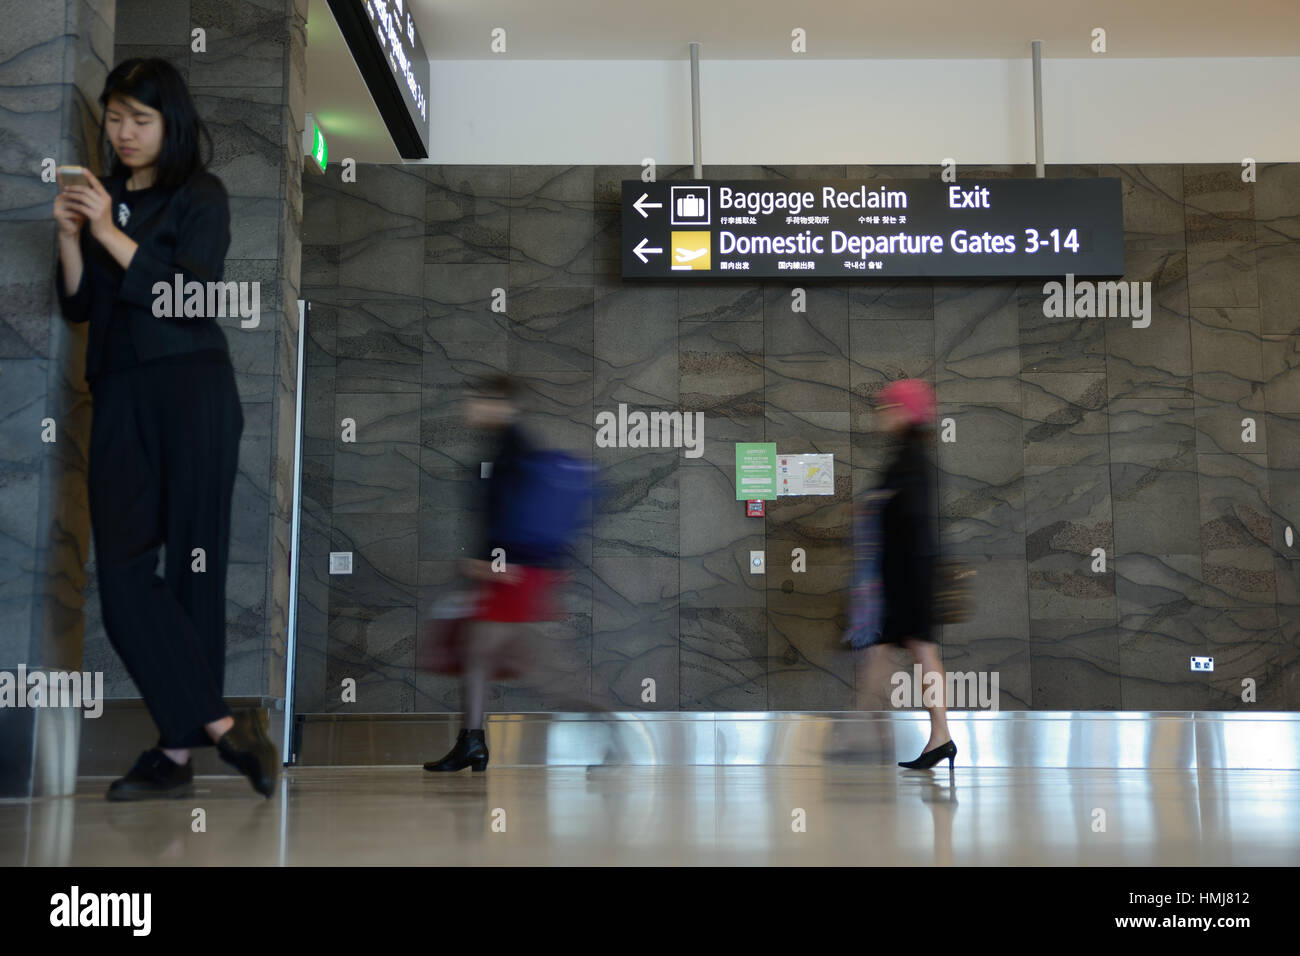 Passagiere-Kopf für das nationale Abflüge Gate am Flughafen. Langsame Verschlusszeit für Bewegungsunschärfe. Stockfoto